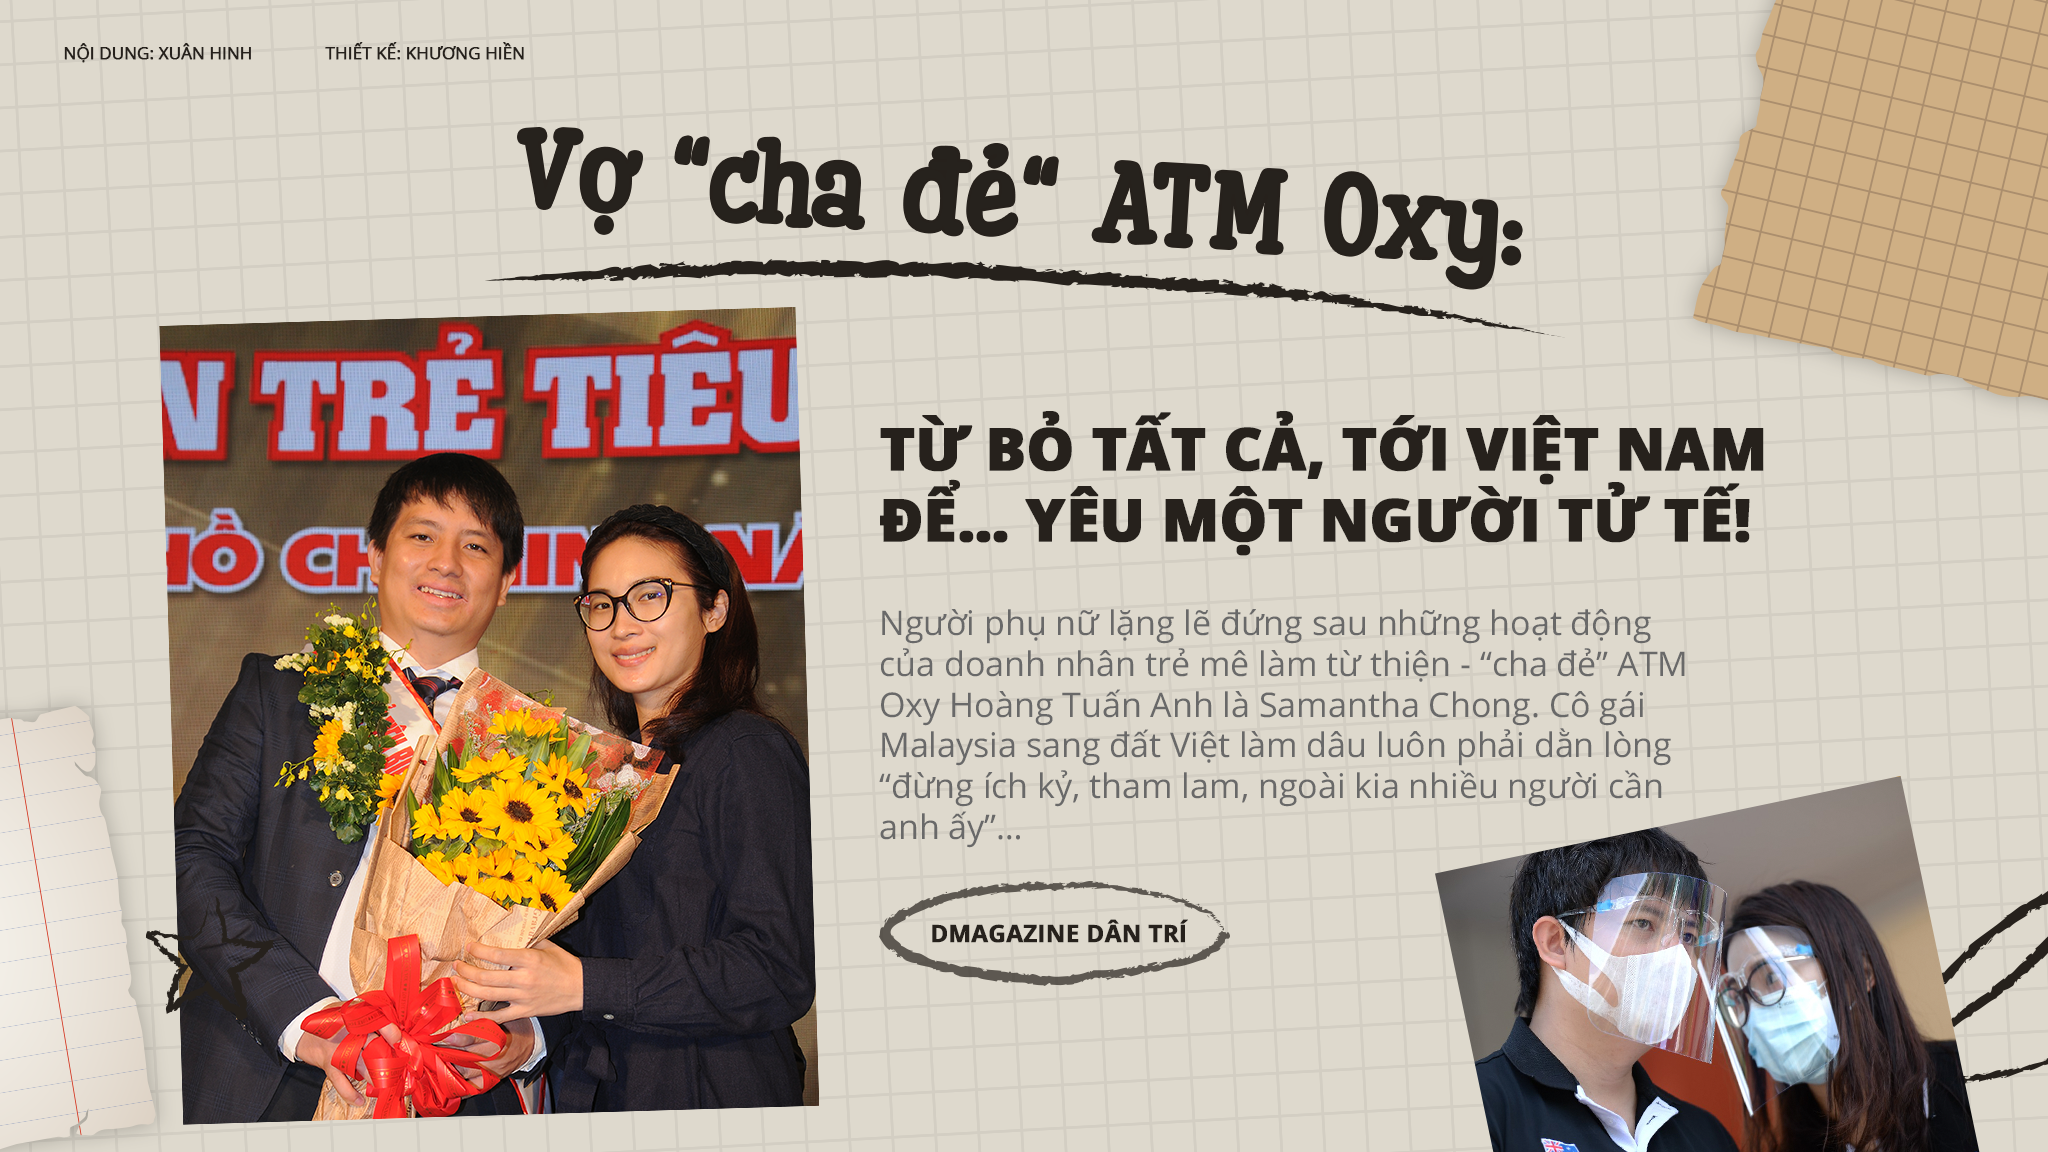 Bí mật về một hậu phương bỏ tất cả, tới Việt Nam để yêu cha đẻ ATM gạo - 1